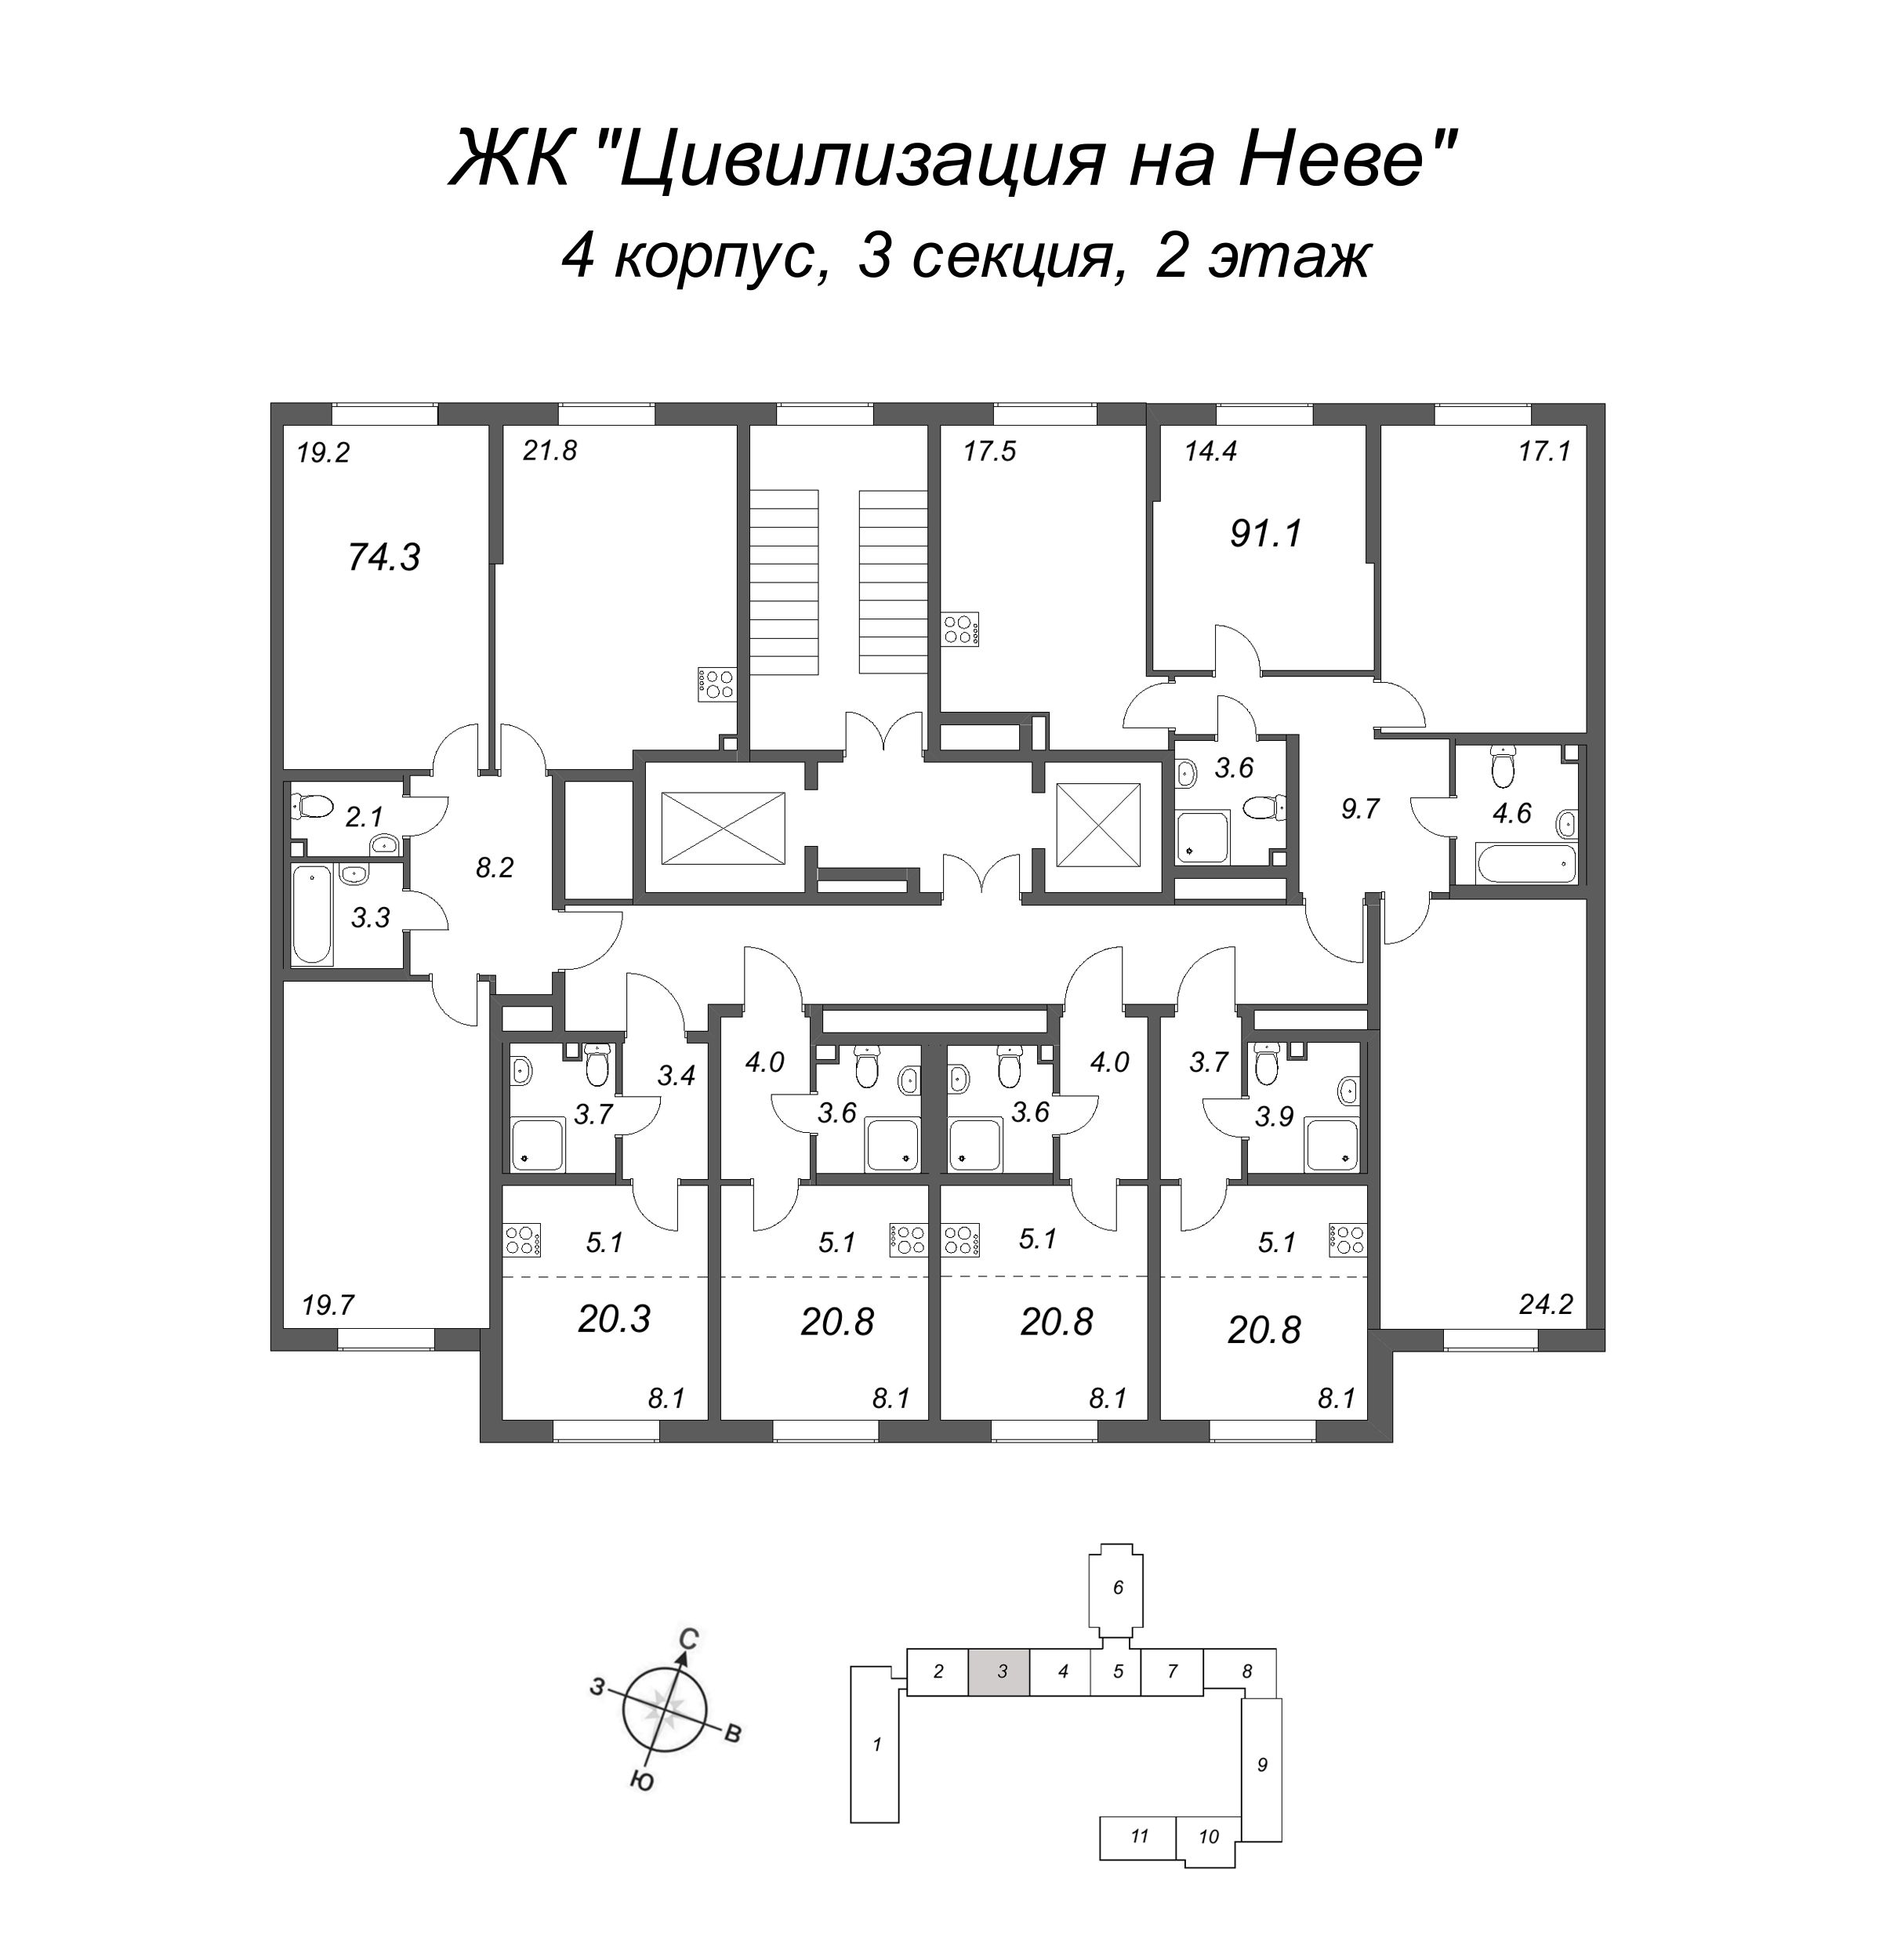 4-комнатная (Евро) квартира, 91.1 м² в ЖК "Цивилизация на Неве" - планировка этажа